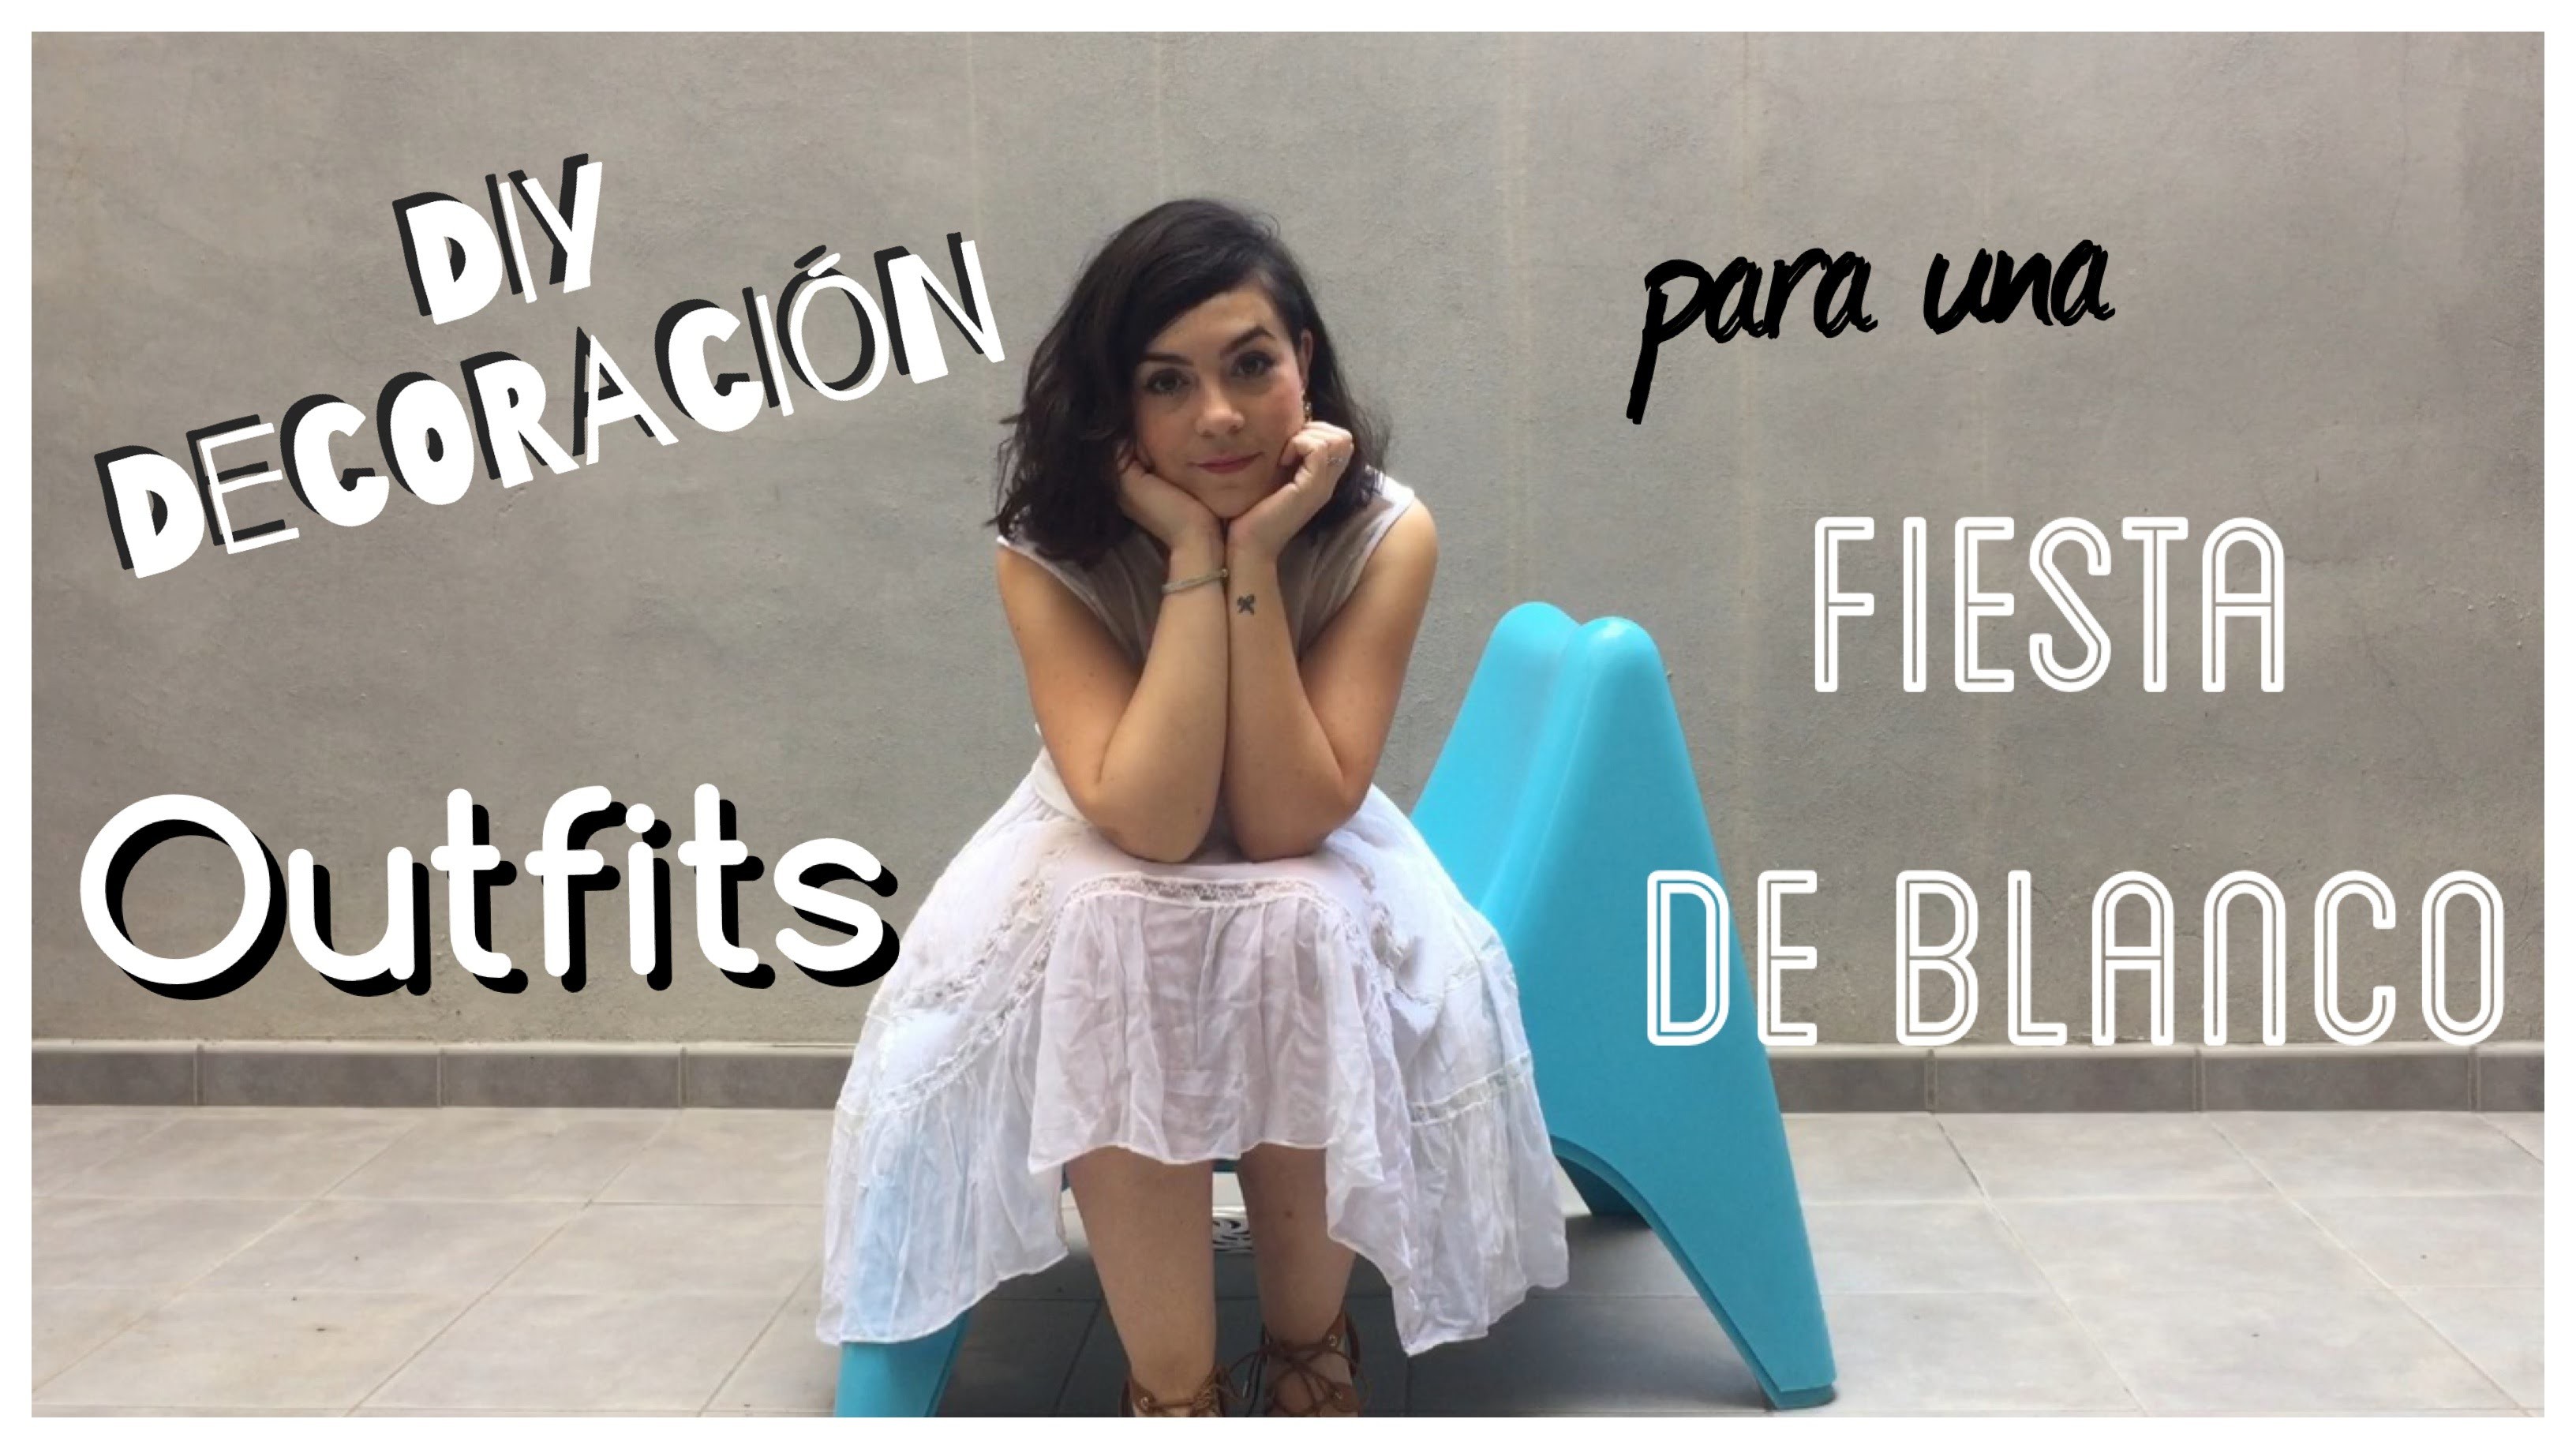 Fiesta de Blanco | DIY decoración + Outfits| Colaboración con Margalida Nadal